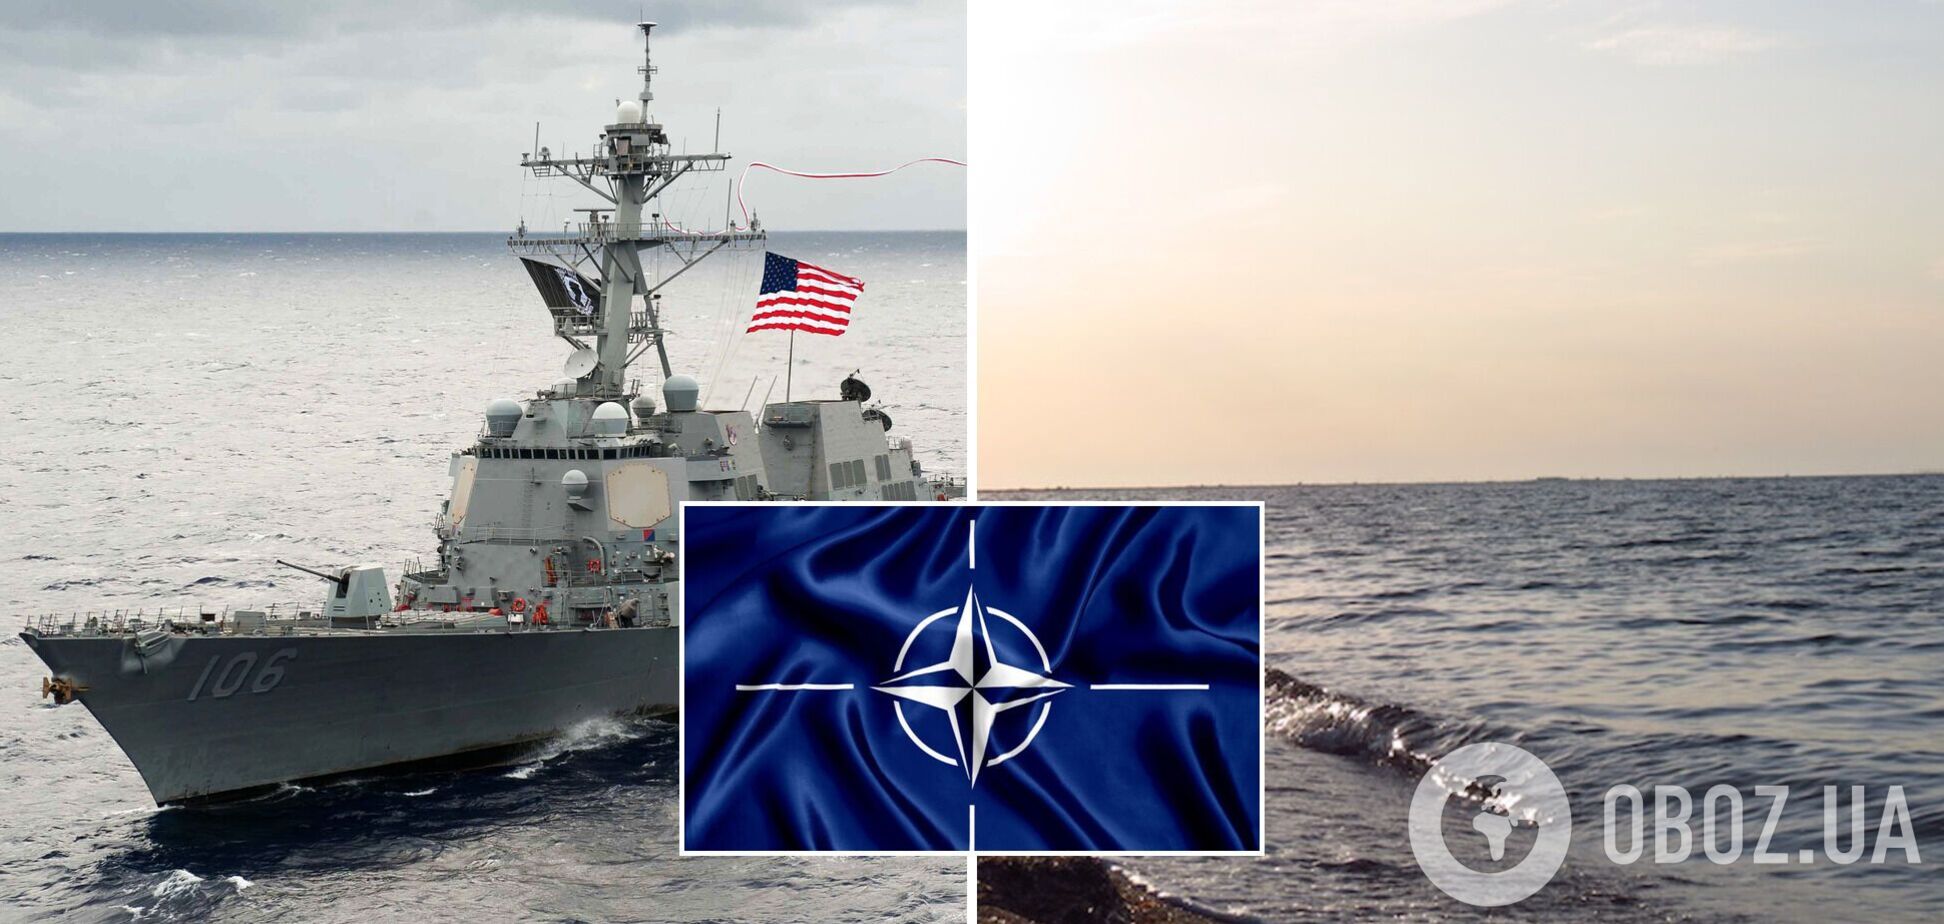 Американский эсминец направляется в Черное море для сотрудничества с союзниками по НАТО